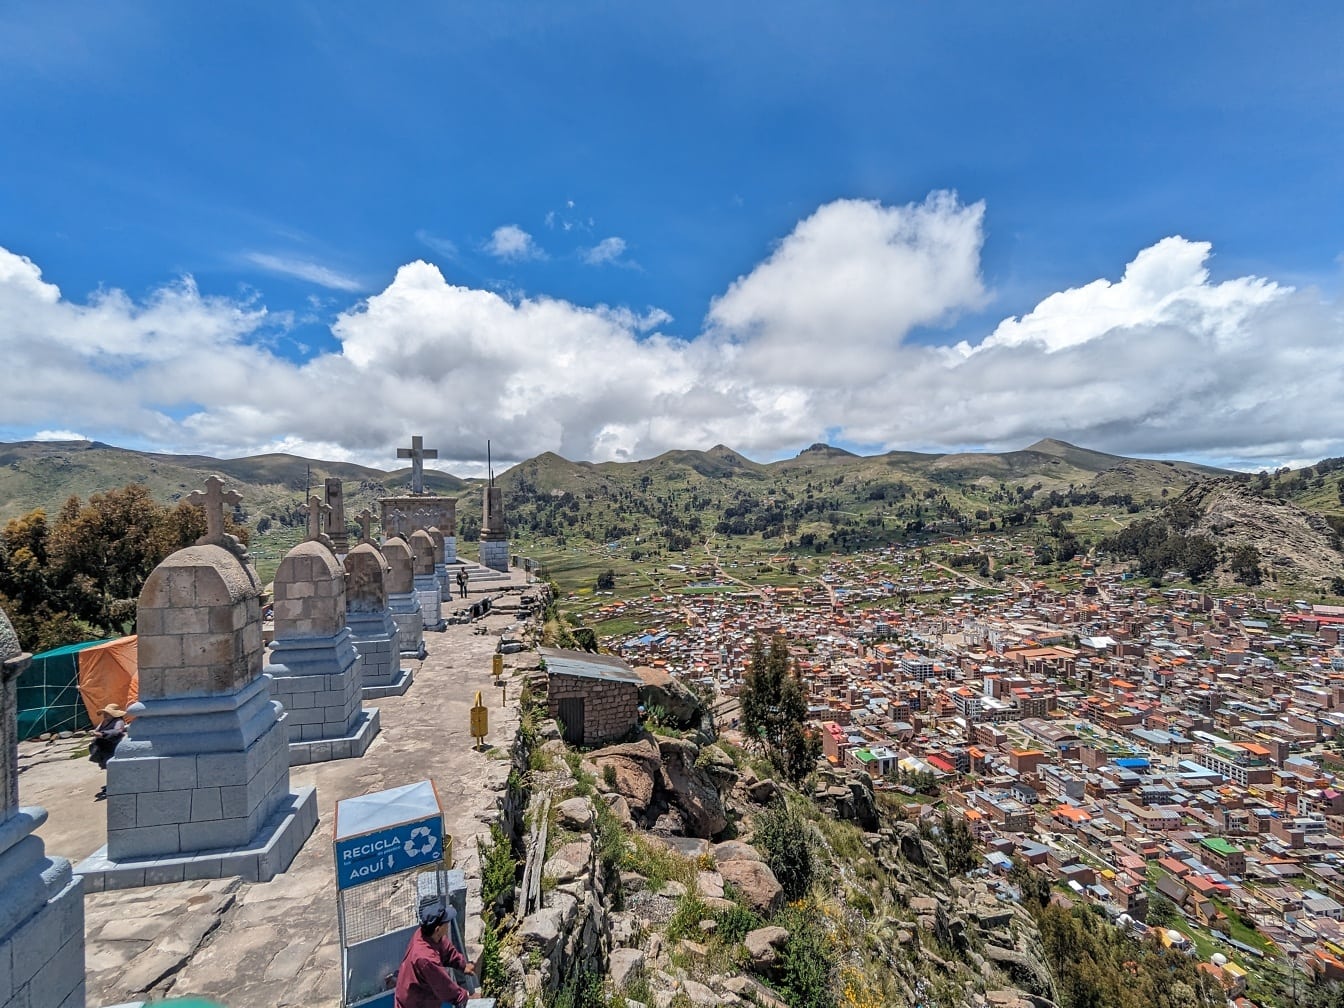 Widok na miasto ze wzgórza Calvary ze cmentarzem na szczycie wzgórza